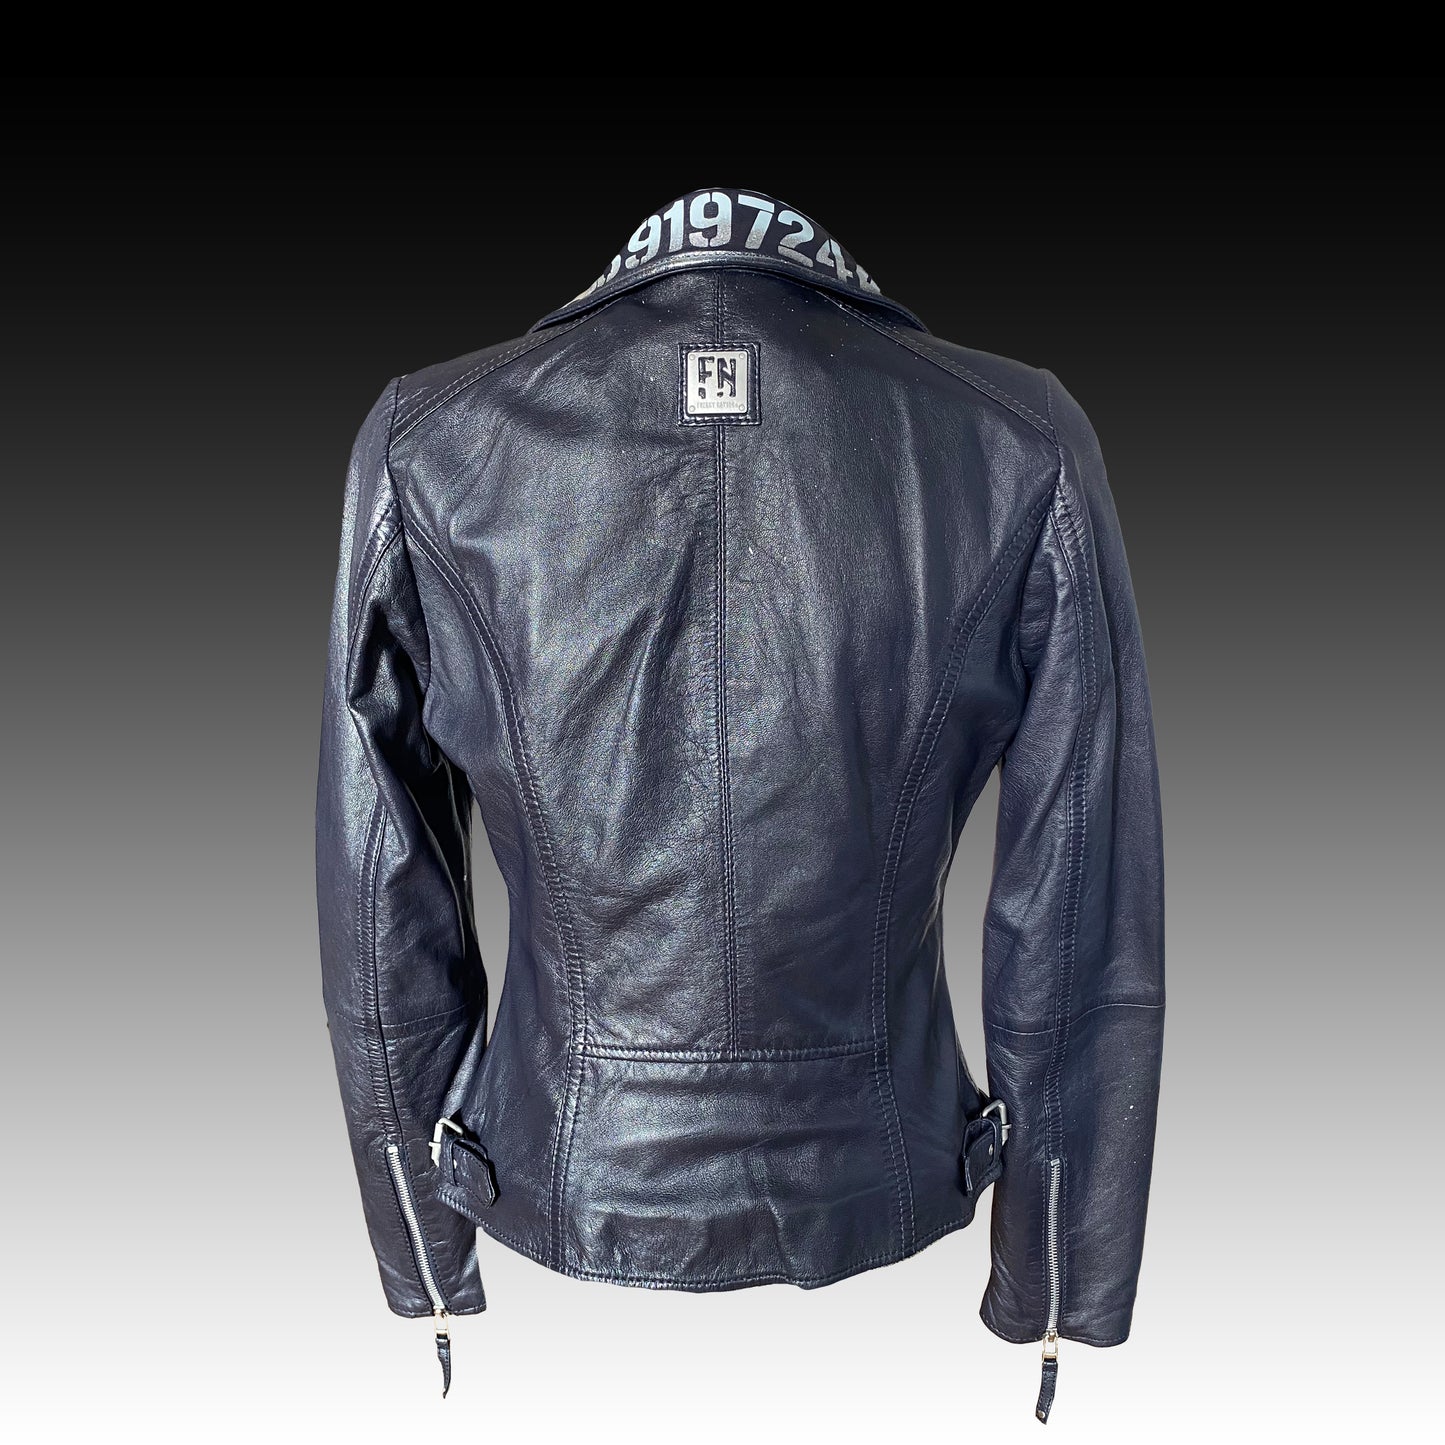 Thunderstorm - leather jacket